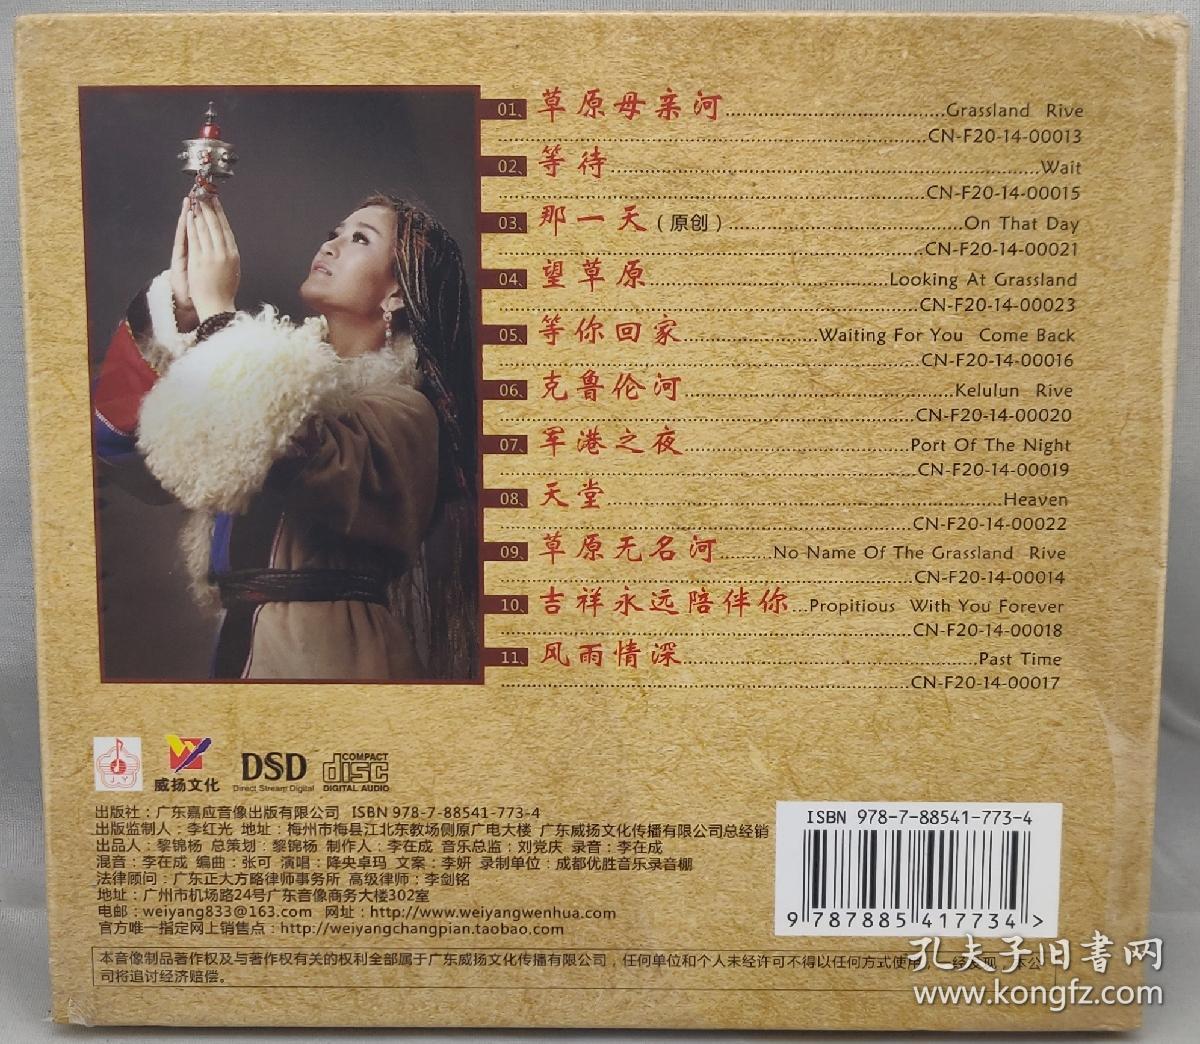 降央卓玛 金色的呼唤2 DSD 正版CD光盘 广东威扬文化公司